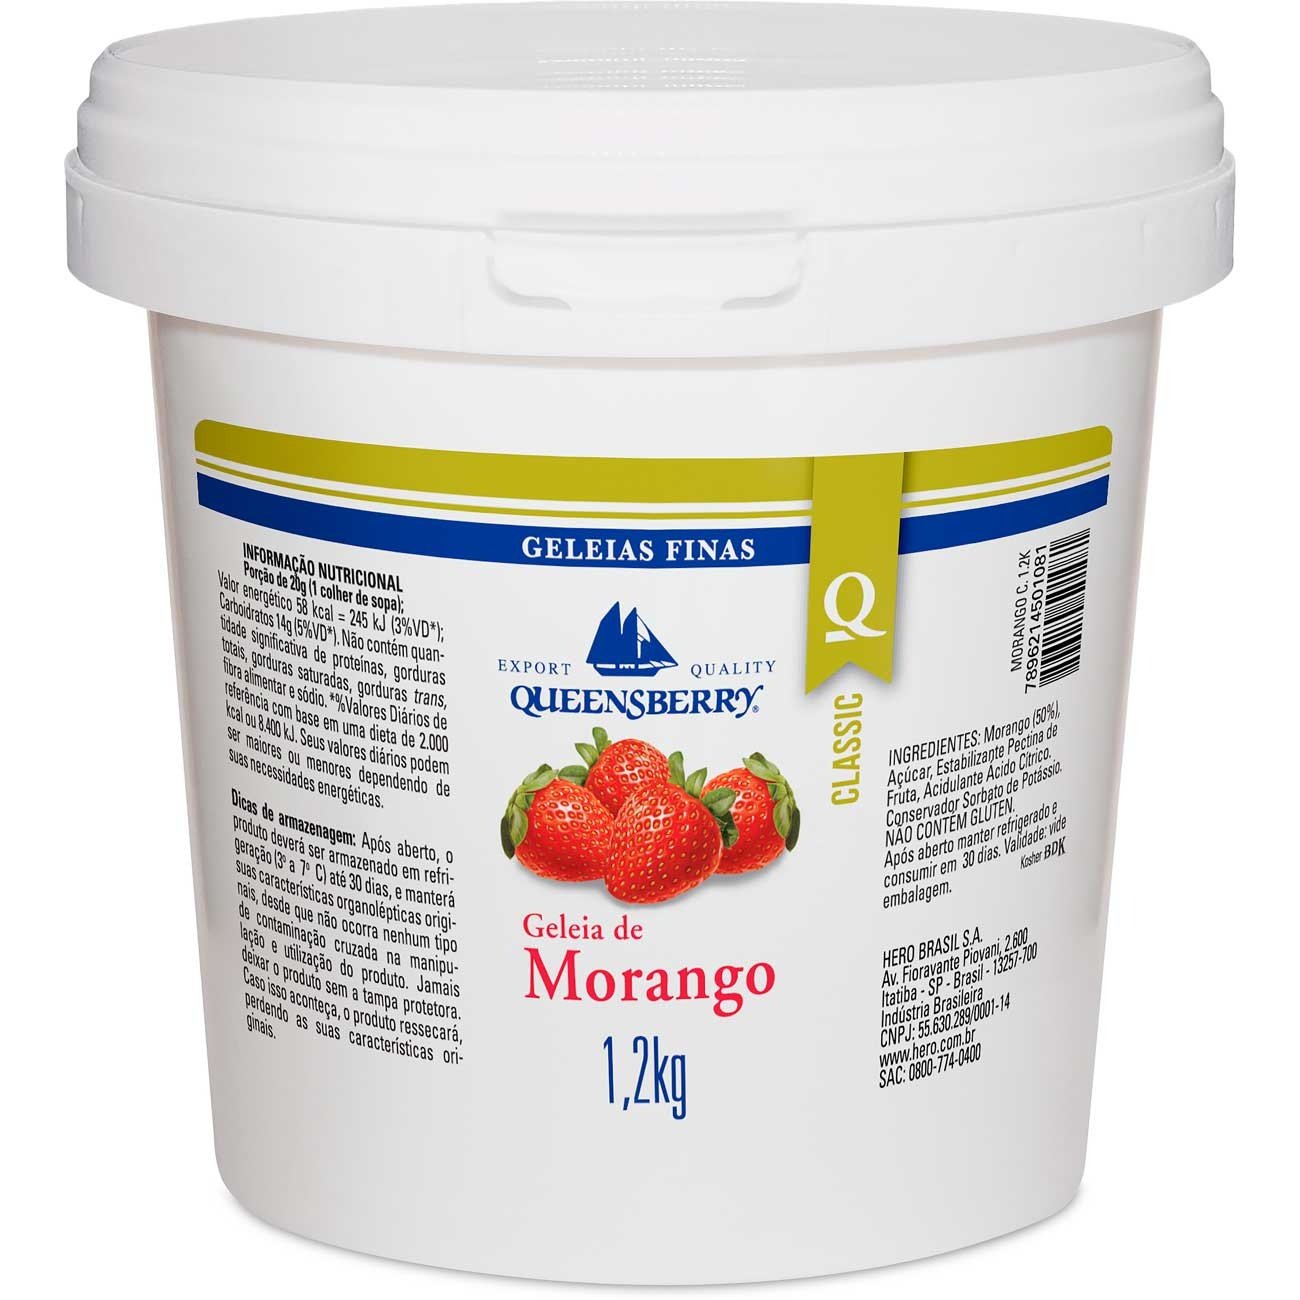 Geleia de Morango - Geleia de Morango